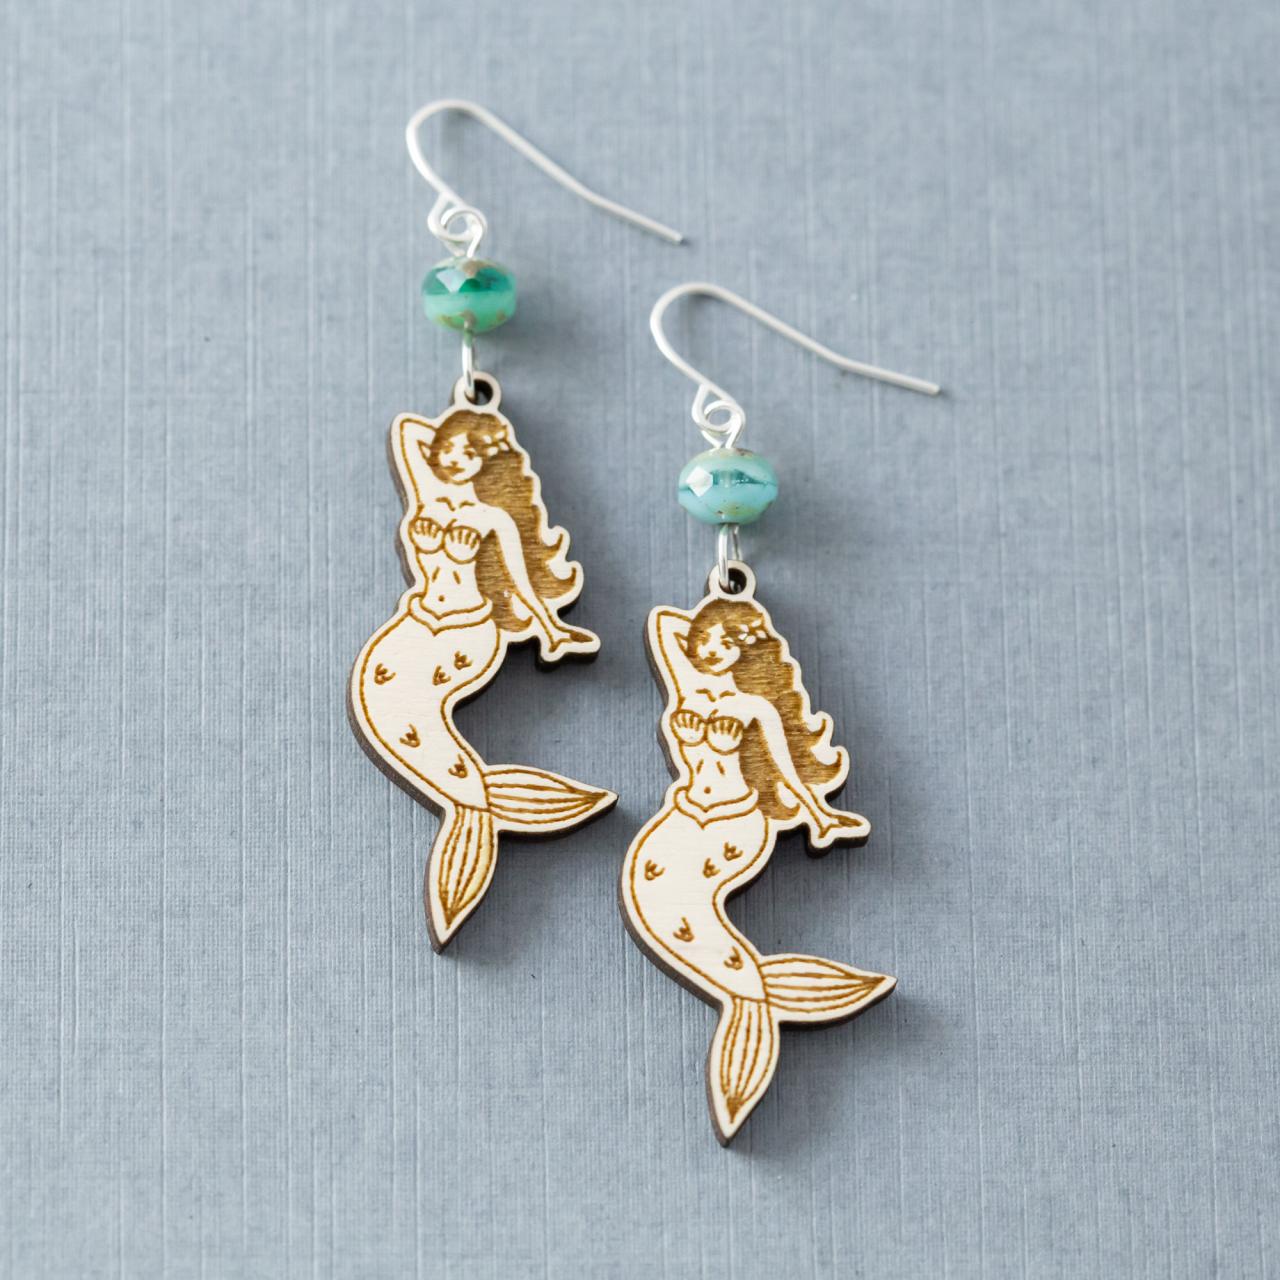 Cute Mermaid Earrings, Silver, White & Blue Earrings, Beach Earrings, Mermaid Dangle Earrings, Coastal Earrings, Mermaid Jewelry